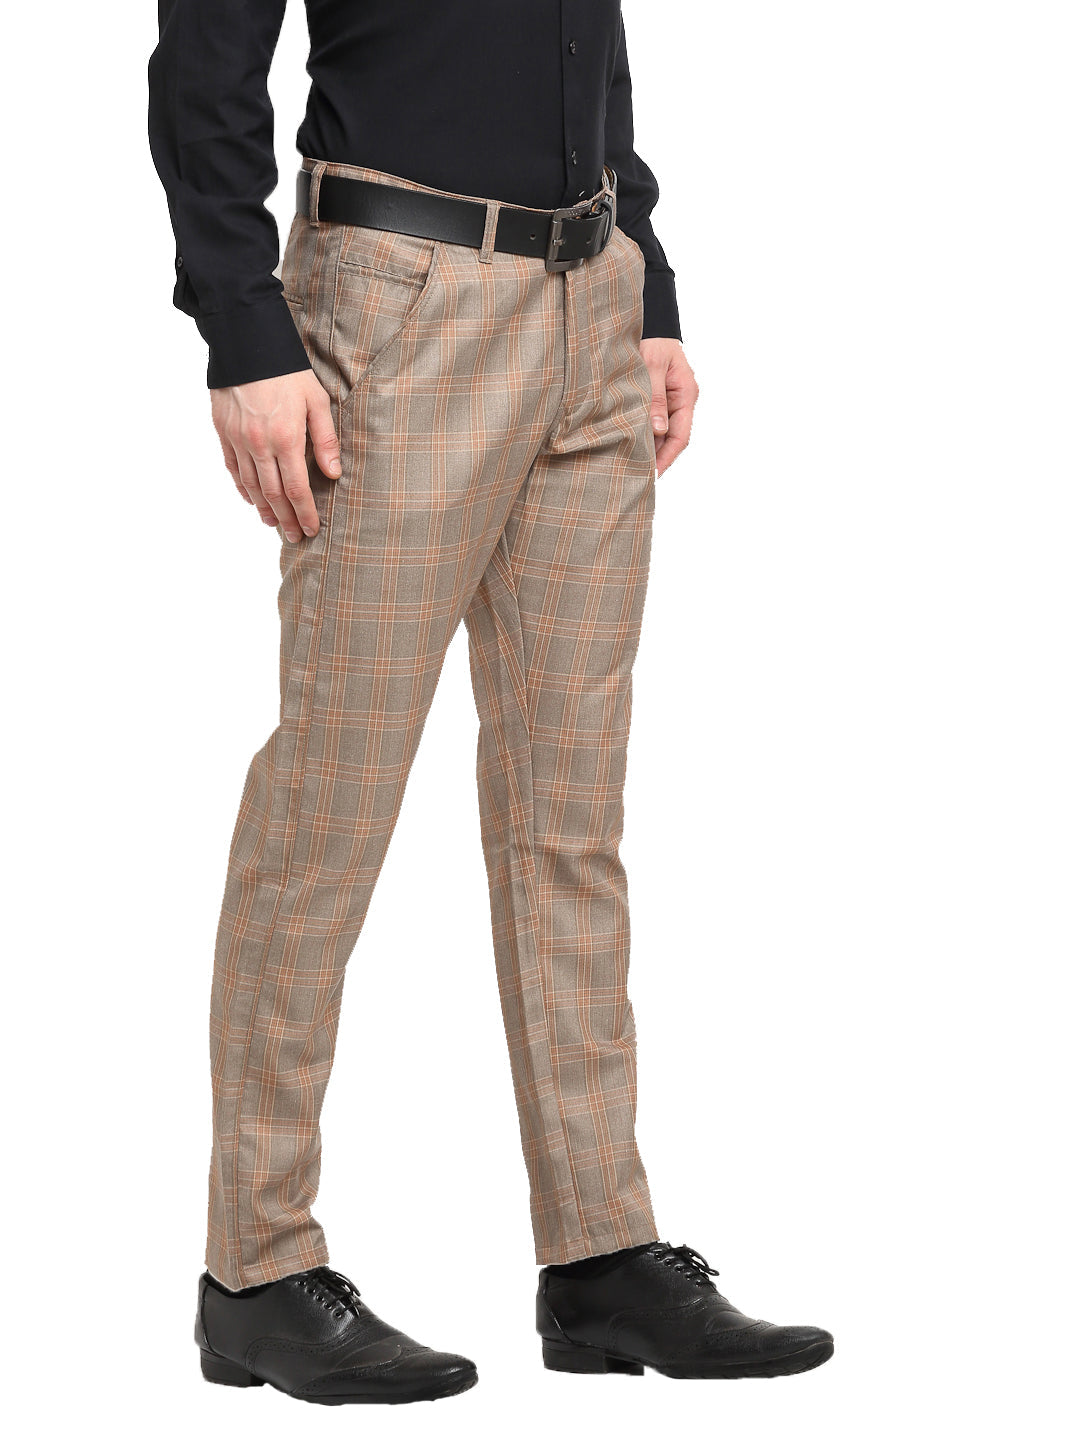 Men's Formal Trousers - Buy Online - Happy Gentleman US